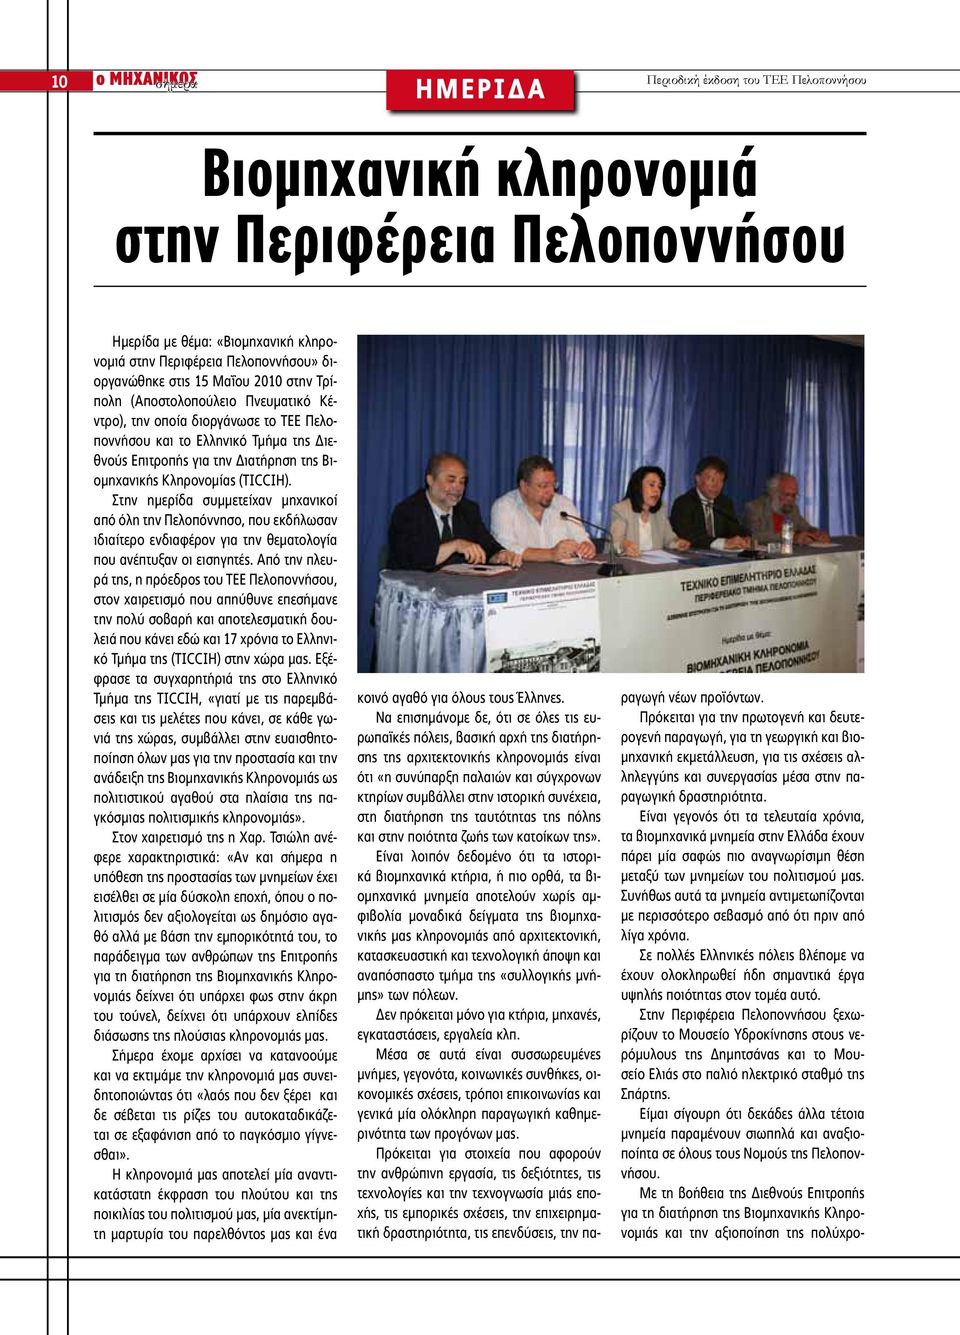 Βιομηχανικής Κληρονομίας (TICCIH). Στην ημερίδα συμμετείχαν μηχανικοί από όλη την Πελοπόννησο, που εκδήλωσαν ιδιαίτερο ενδιαφέρον για την θεματολογία που ανέπτυξαν οι εισηγητές.